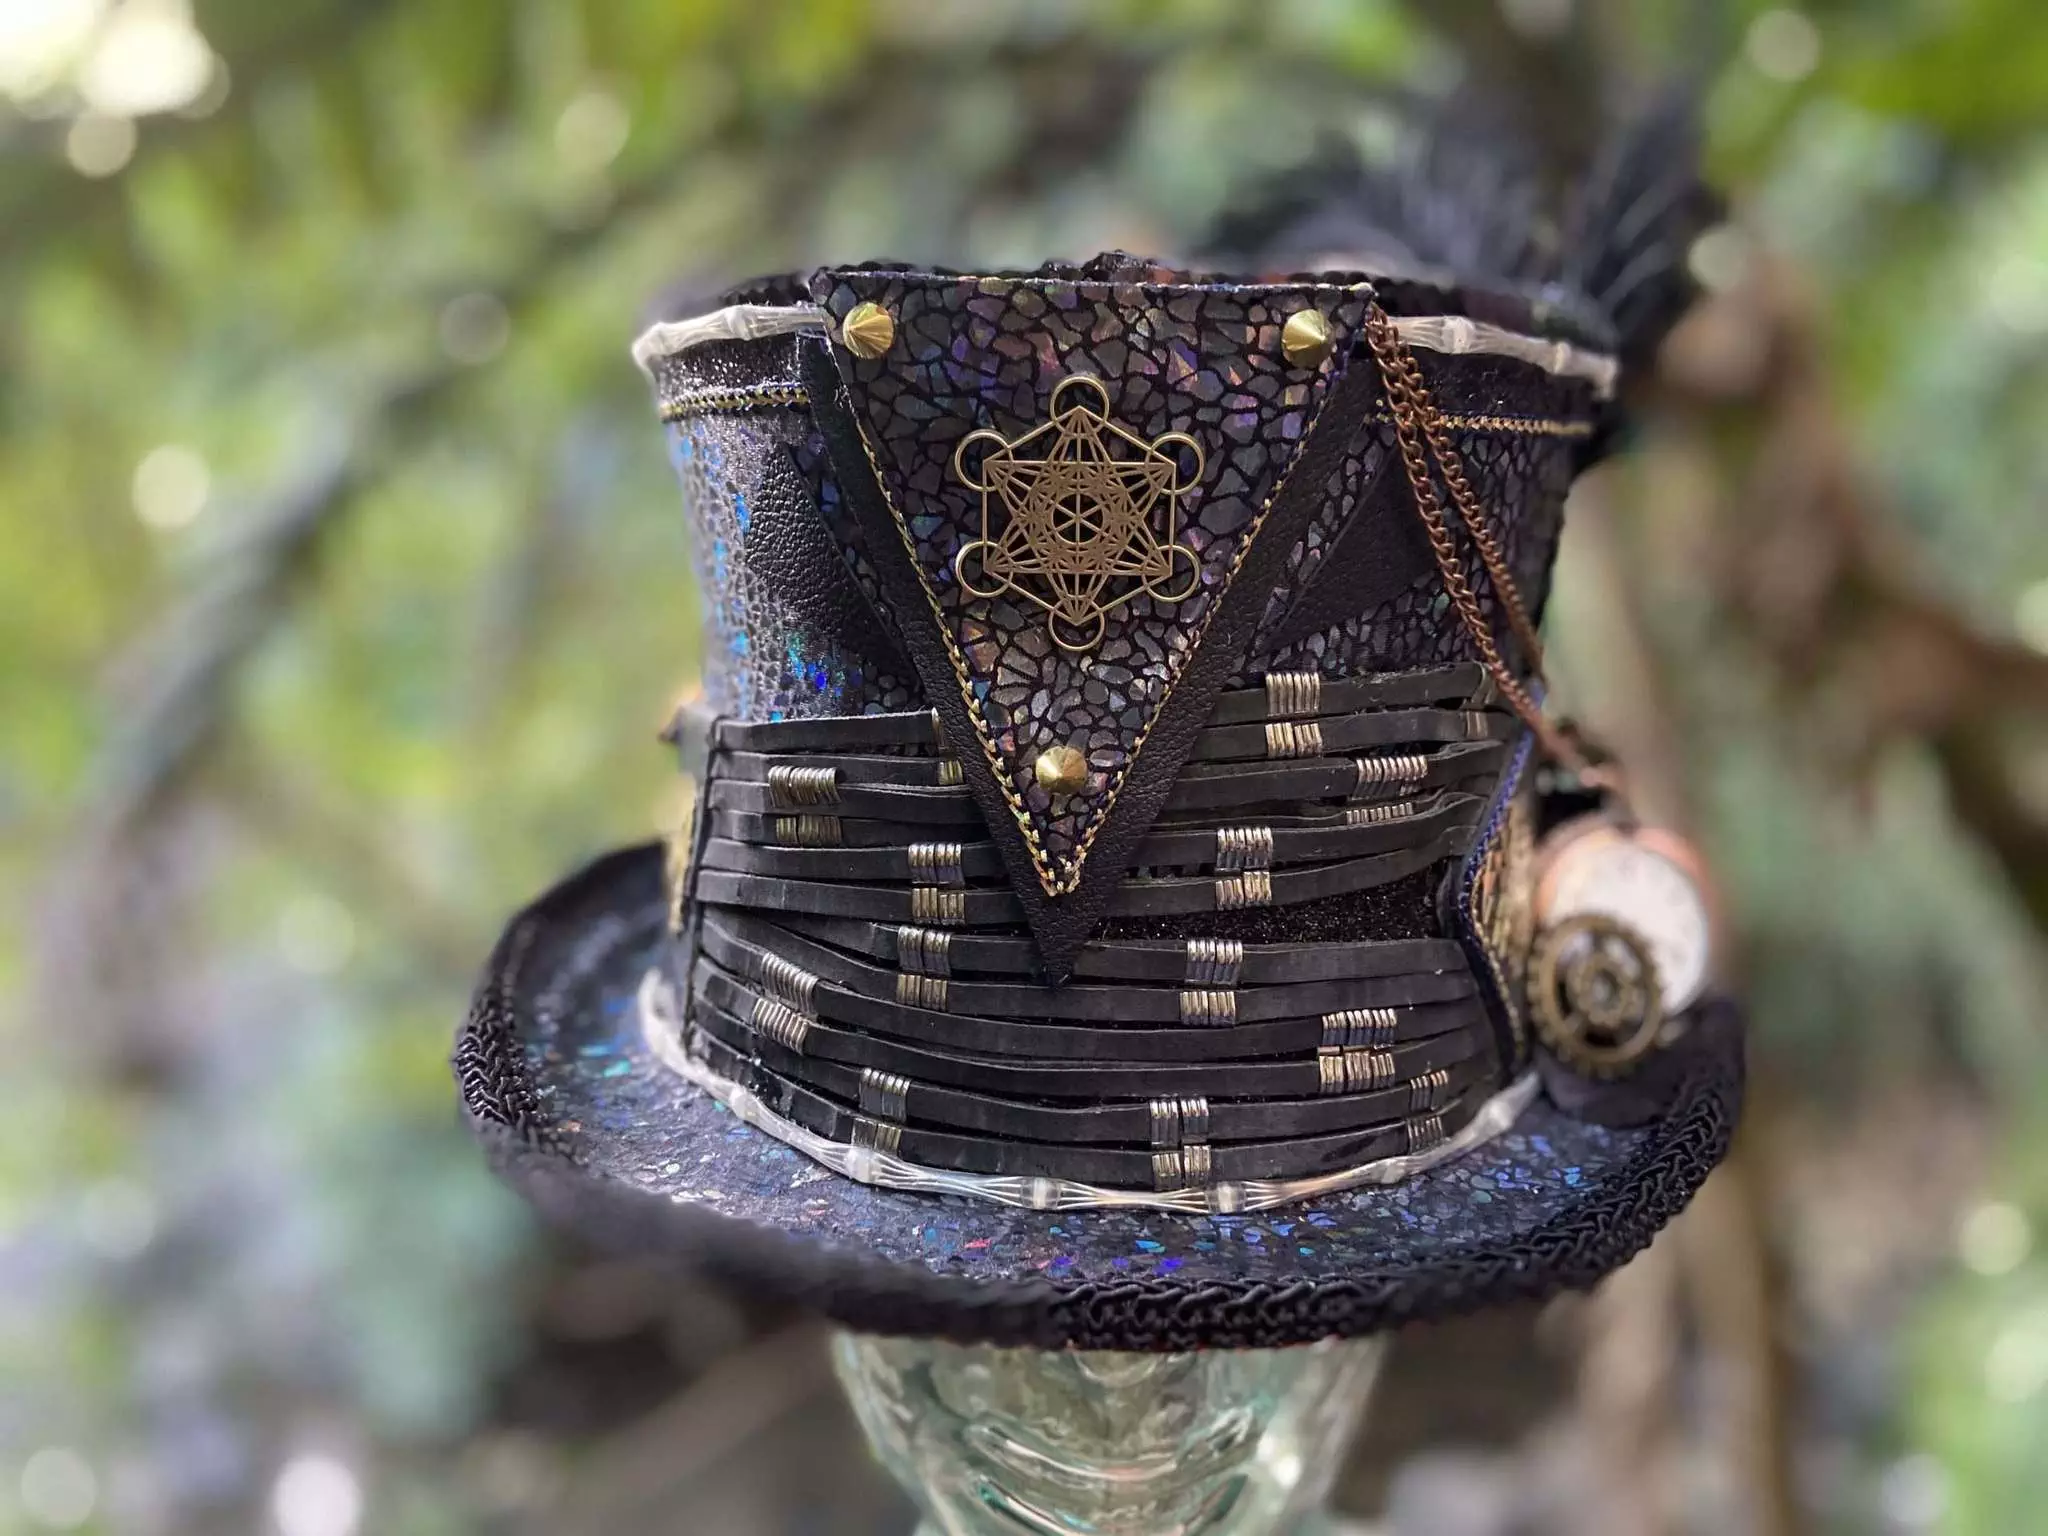 Black Magic Steampunk Fancy LED Top Hat by Morgana de Parteé